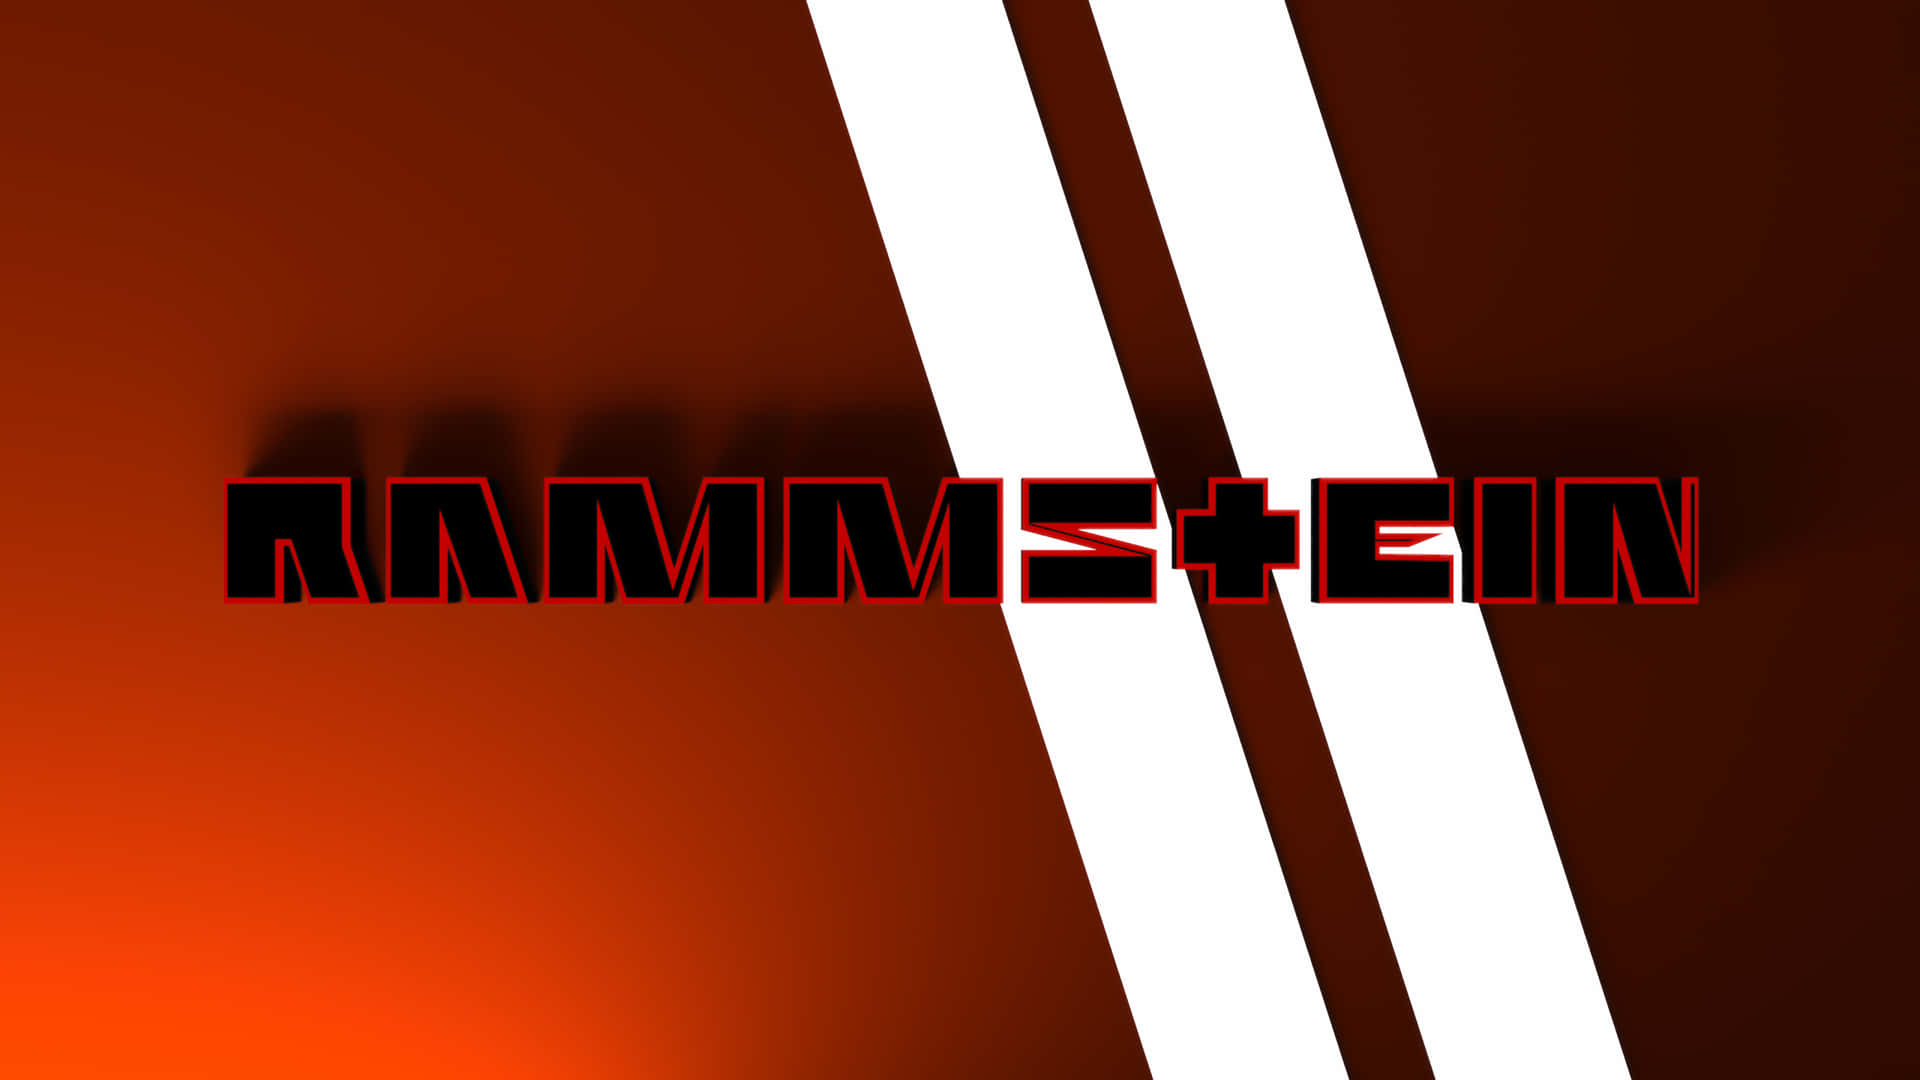 Rammstein Logo Red Gradient Background Background